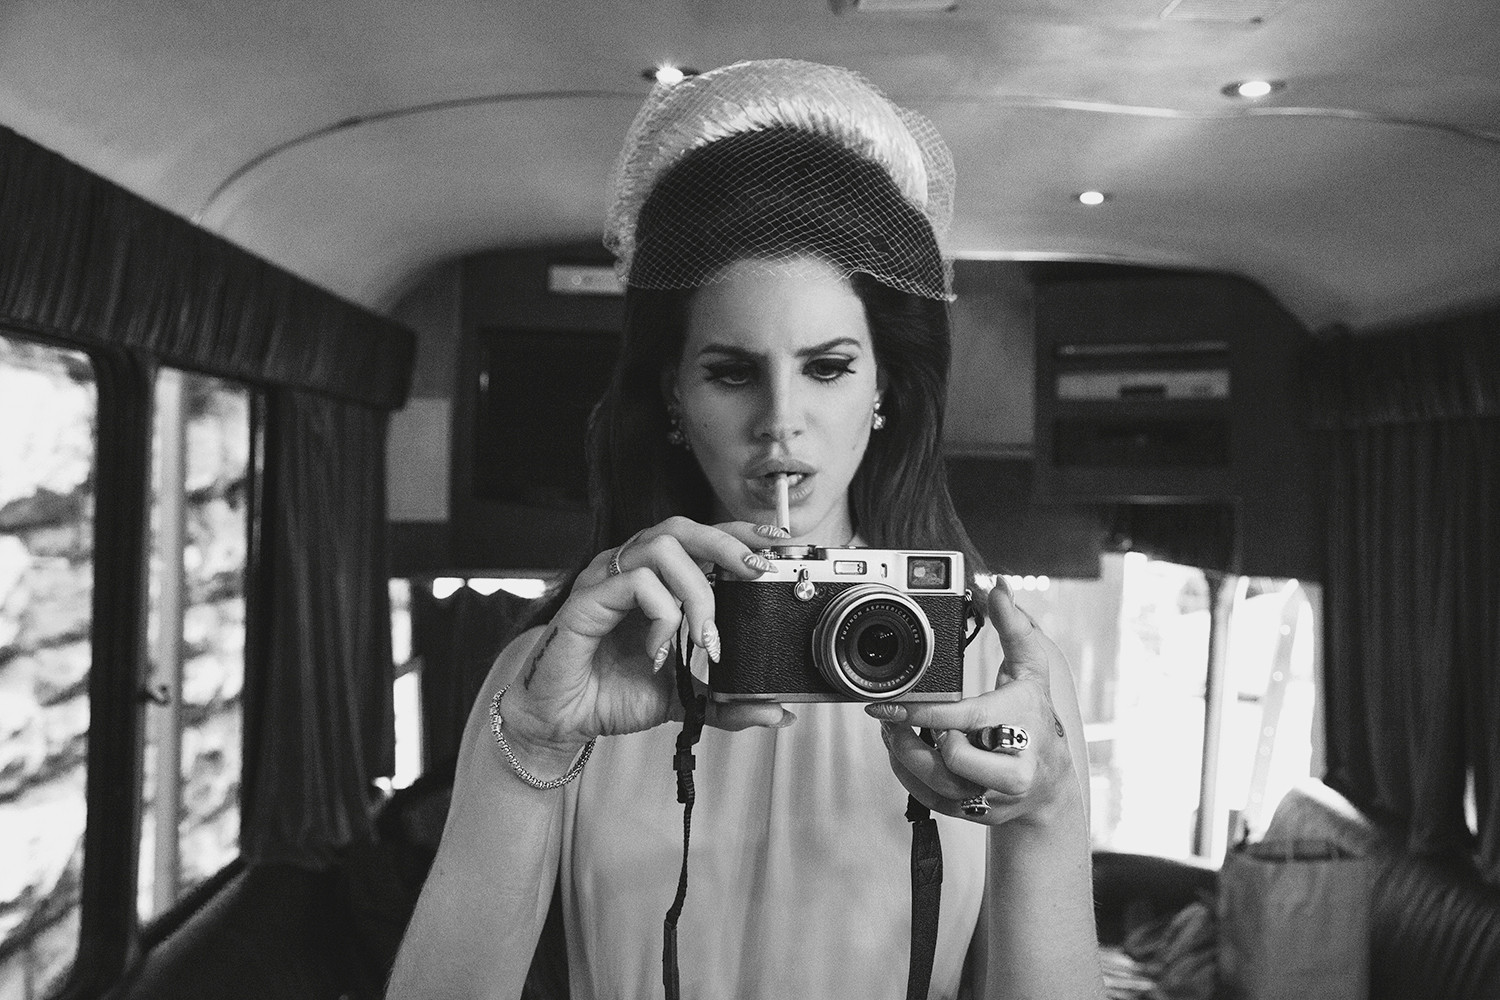 Bạn là fan của Lana Del Rey và muốn sở hữu những bức hình tuyệt đẹp trên điện thoại của mình? Chúng tôi sẽ giúp bạn! Tải ngay những hình nền ấn tượng của cô nàng ca sĩ này để trang trí cho chiếc điện thoại của bạn trở nên phong cách và cá tính hơn.